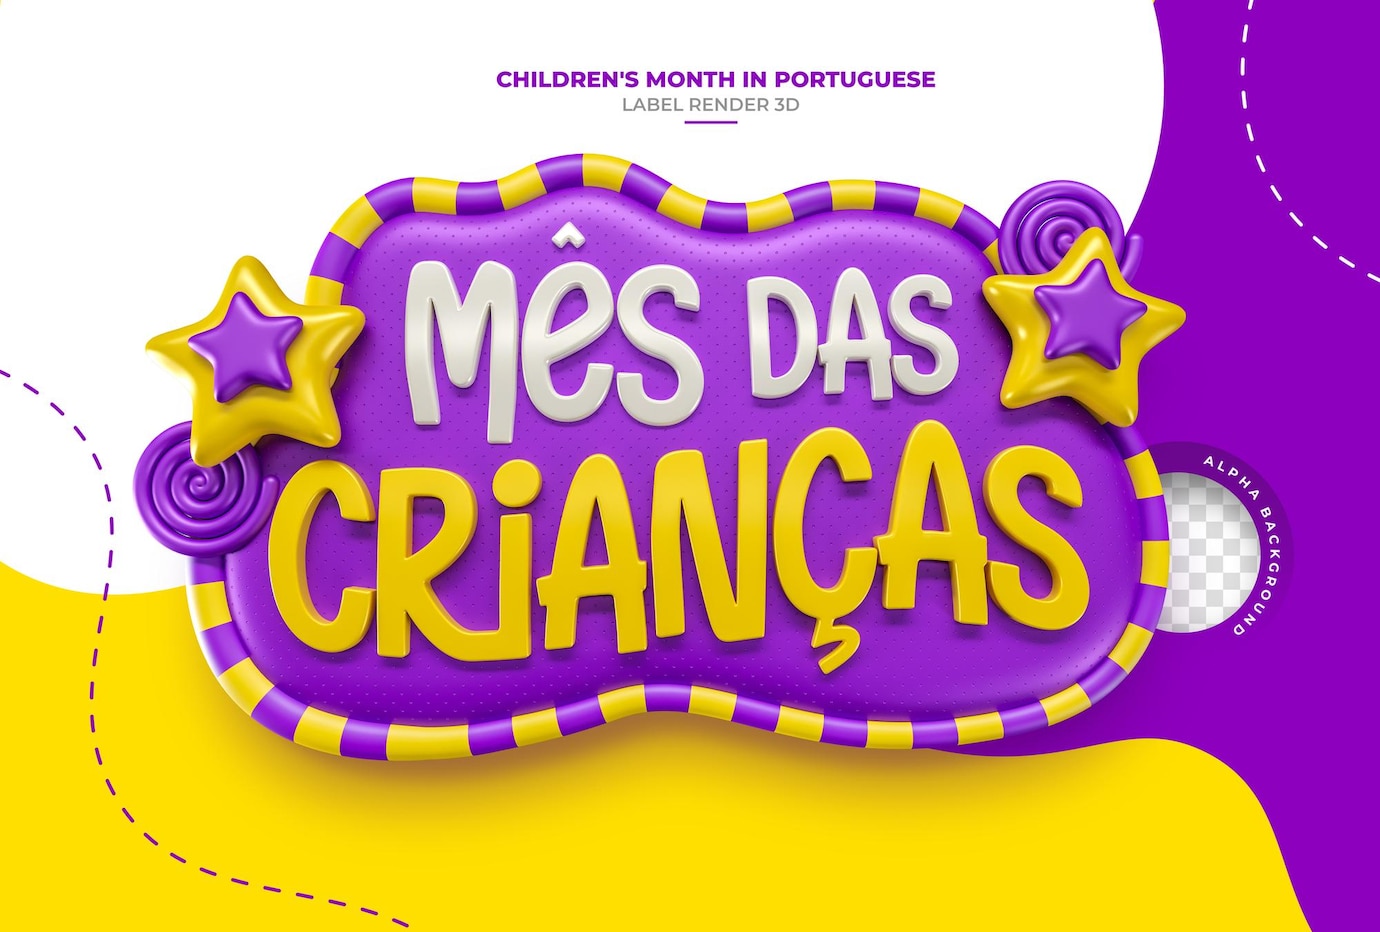 etiqueta do mes das criancas em renderizacao 3d para campanha de marketing no brasil em portugues 36